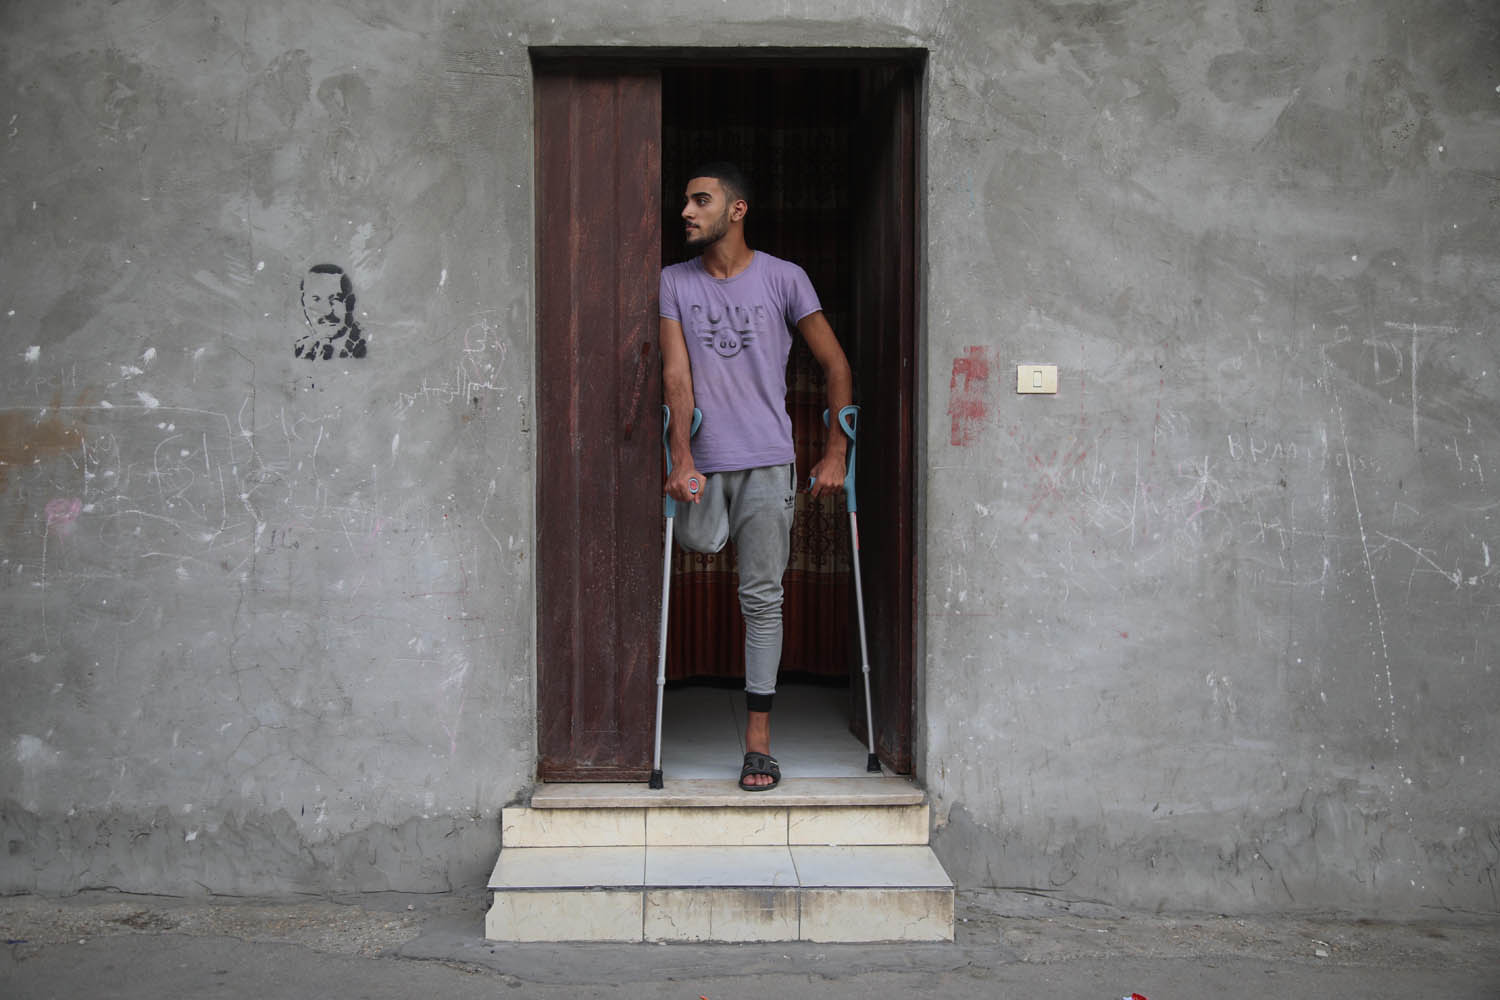 אדם סאלם בביתו בפתח ביתו במחנה שאטי בעזה. "רוצה ללכת כמו כולם" (צילום: מוחמד זאנון)